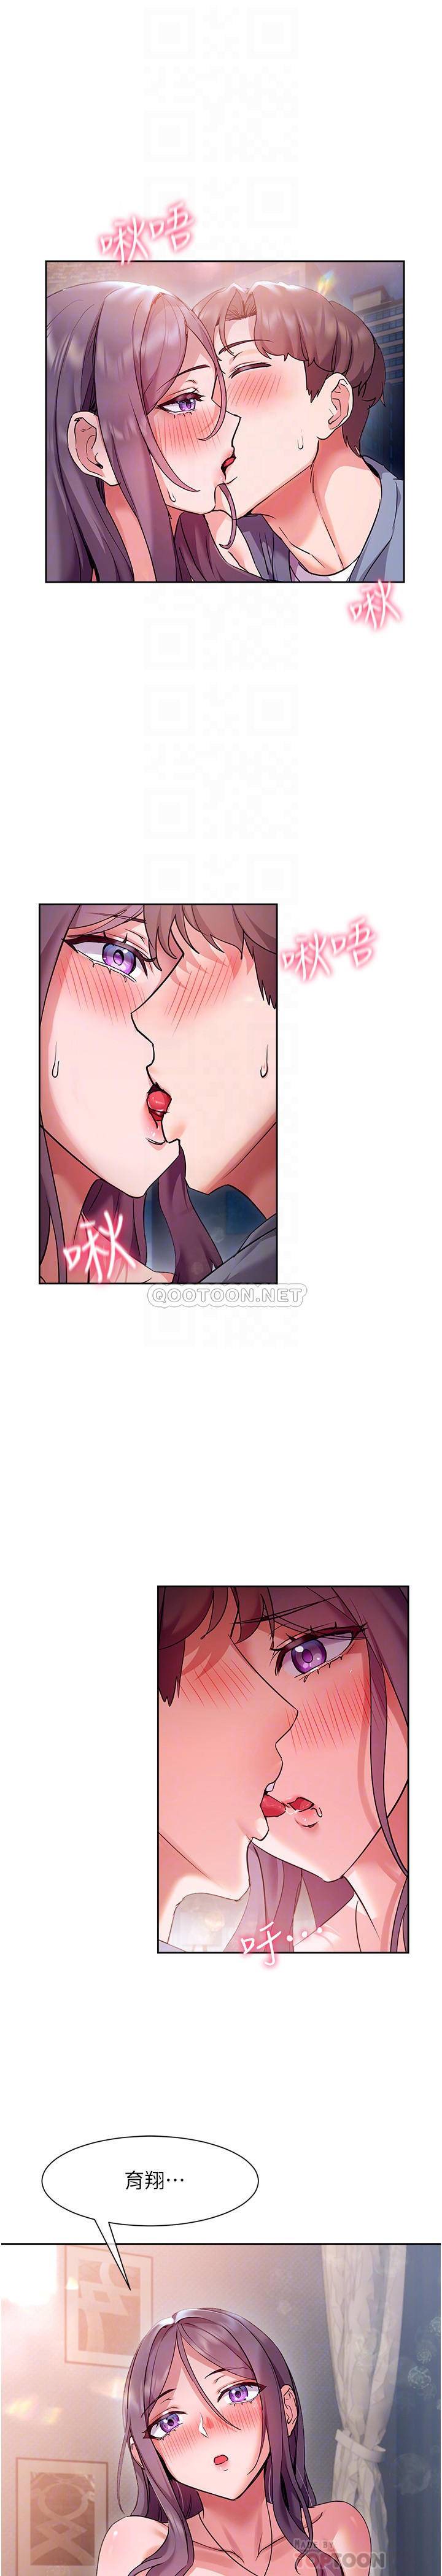 韩国污漫画 現上教學 第12话让你体验乳交的快感! 17